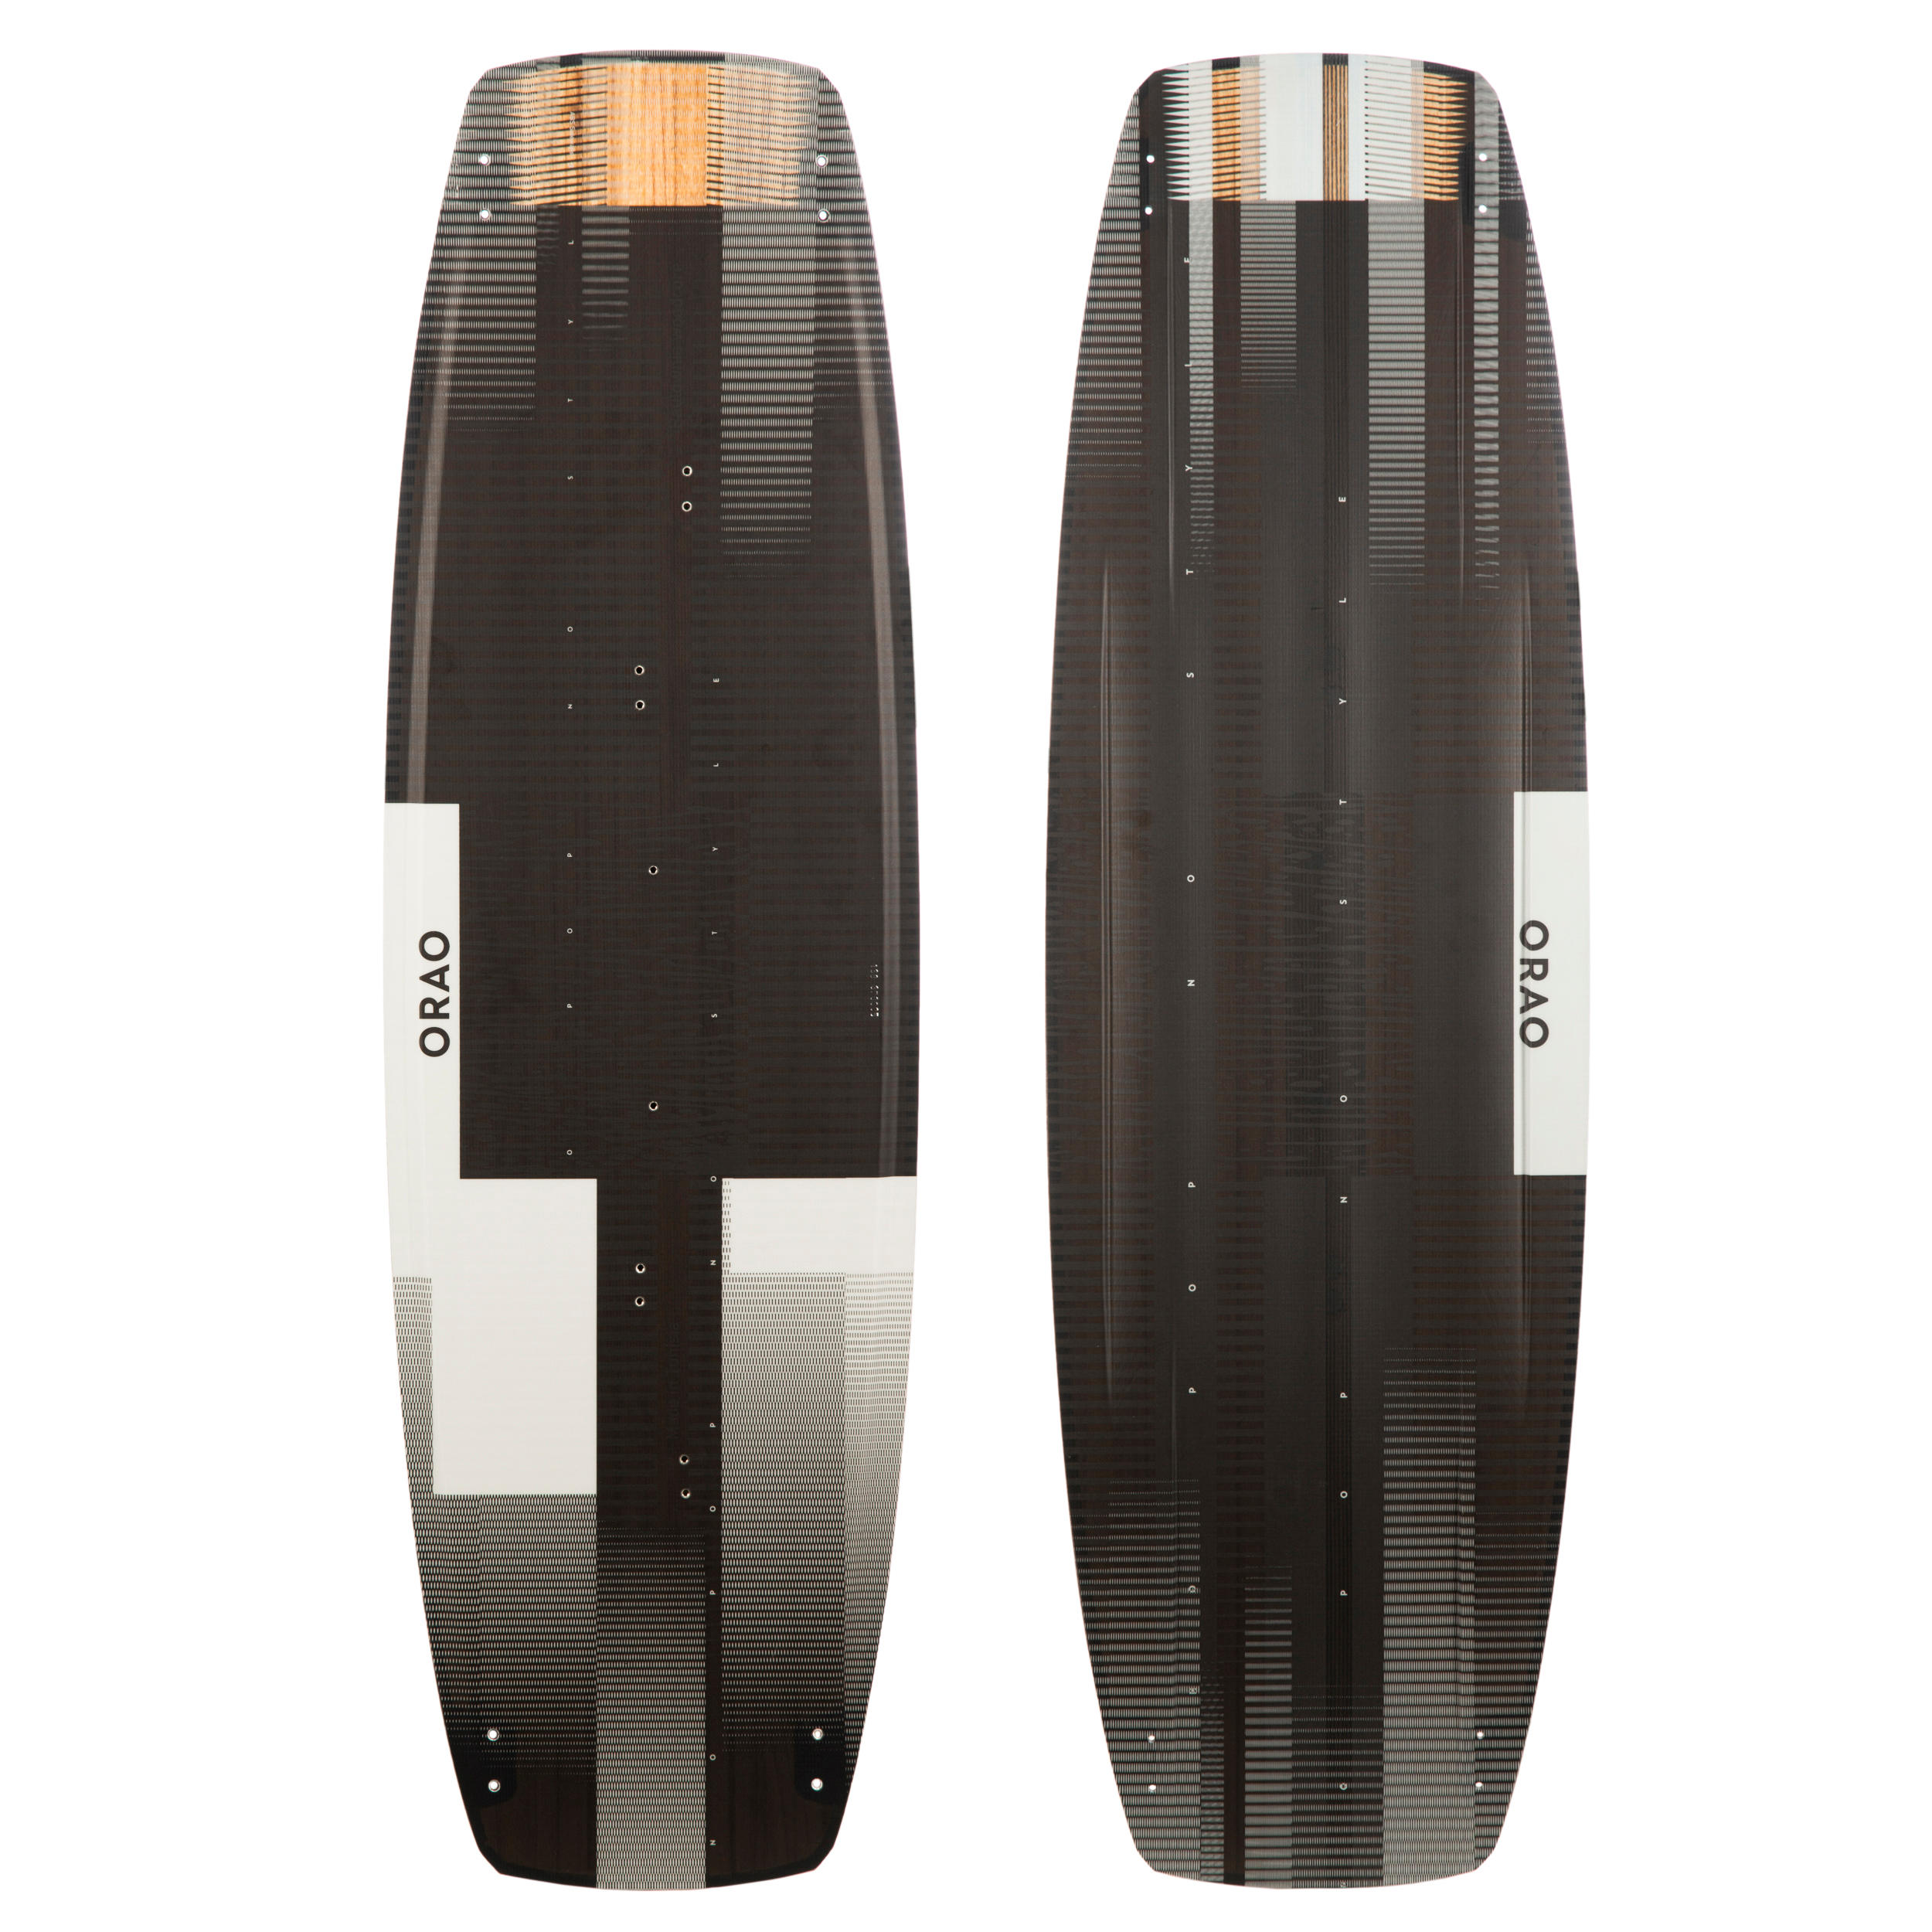 ORAO Kitesurfboard Twin Tip 500 Carbon ohne Zubehör 138 × 41 cm EINHEITSGRÖSSE